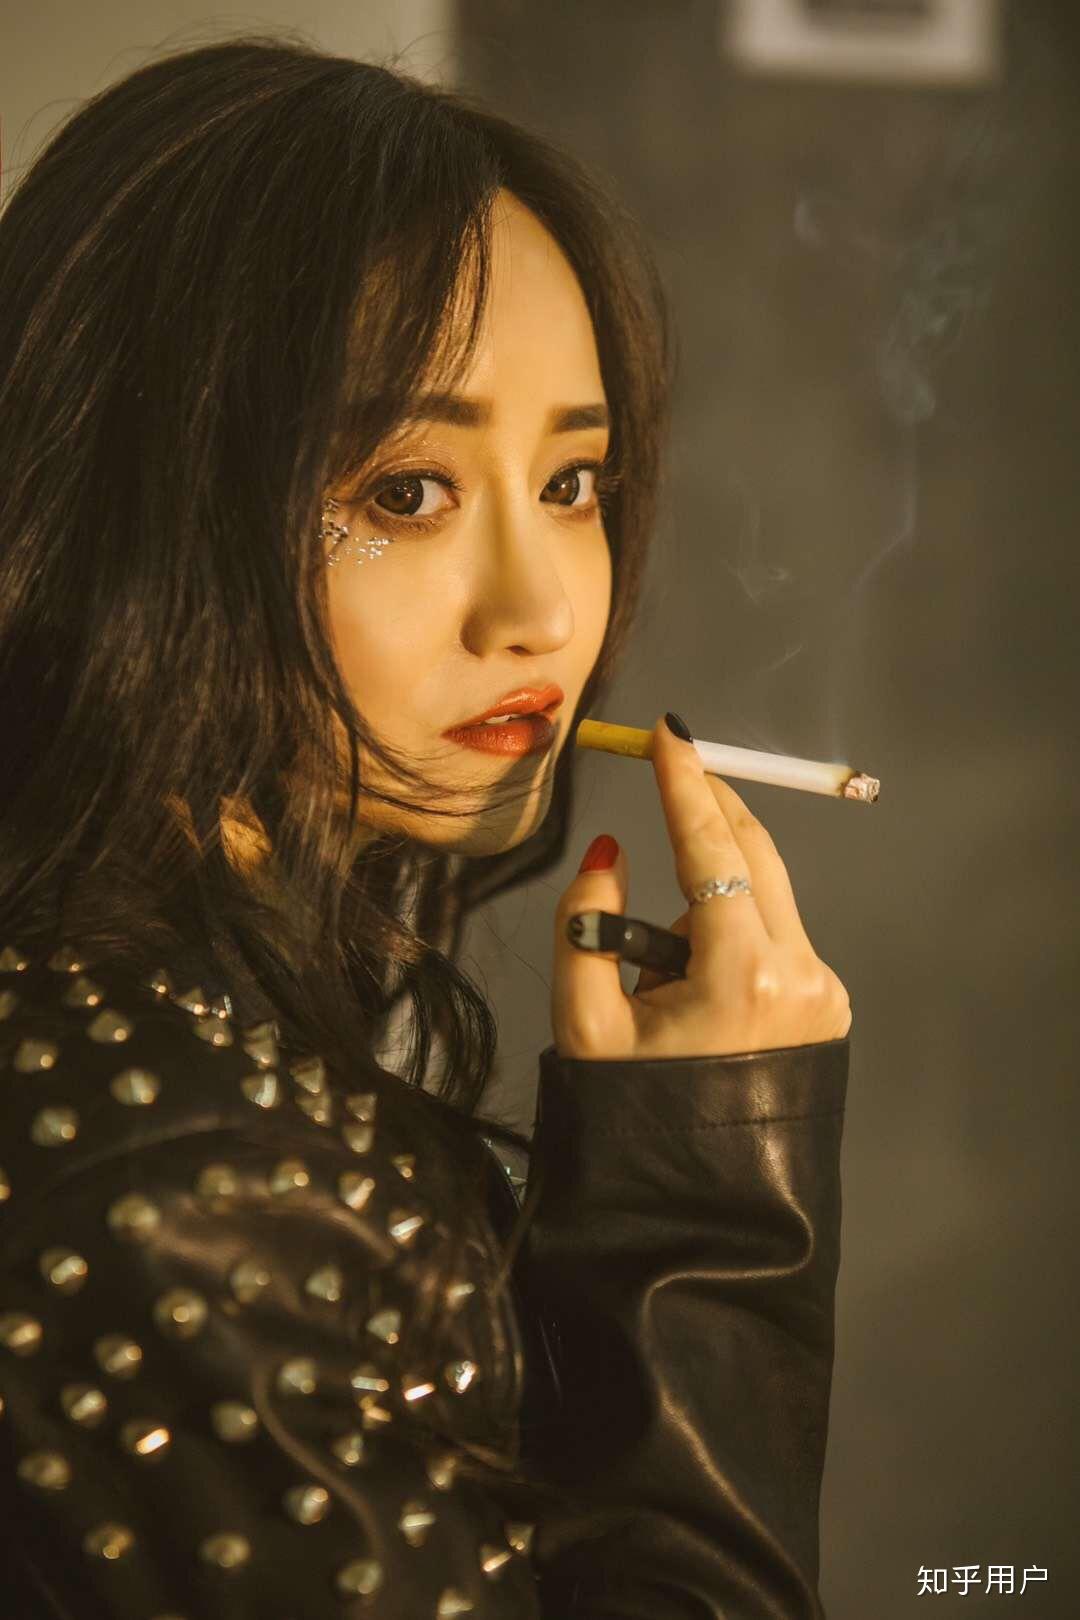 女孩吸烟的样子有没有好看的时候呢?